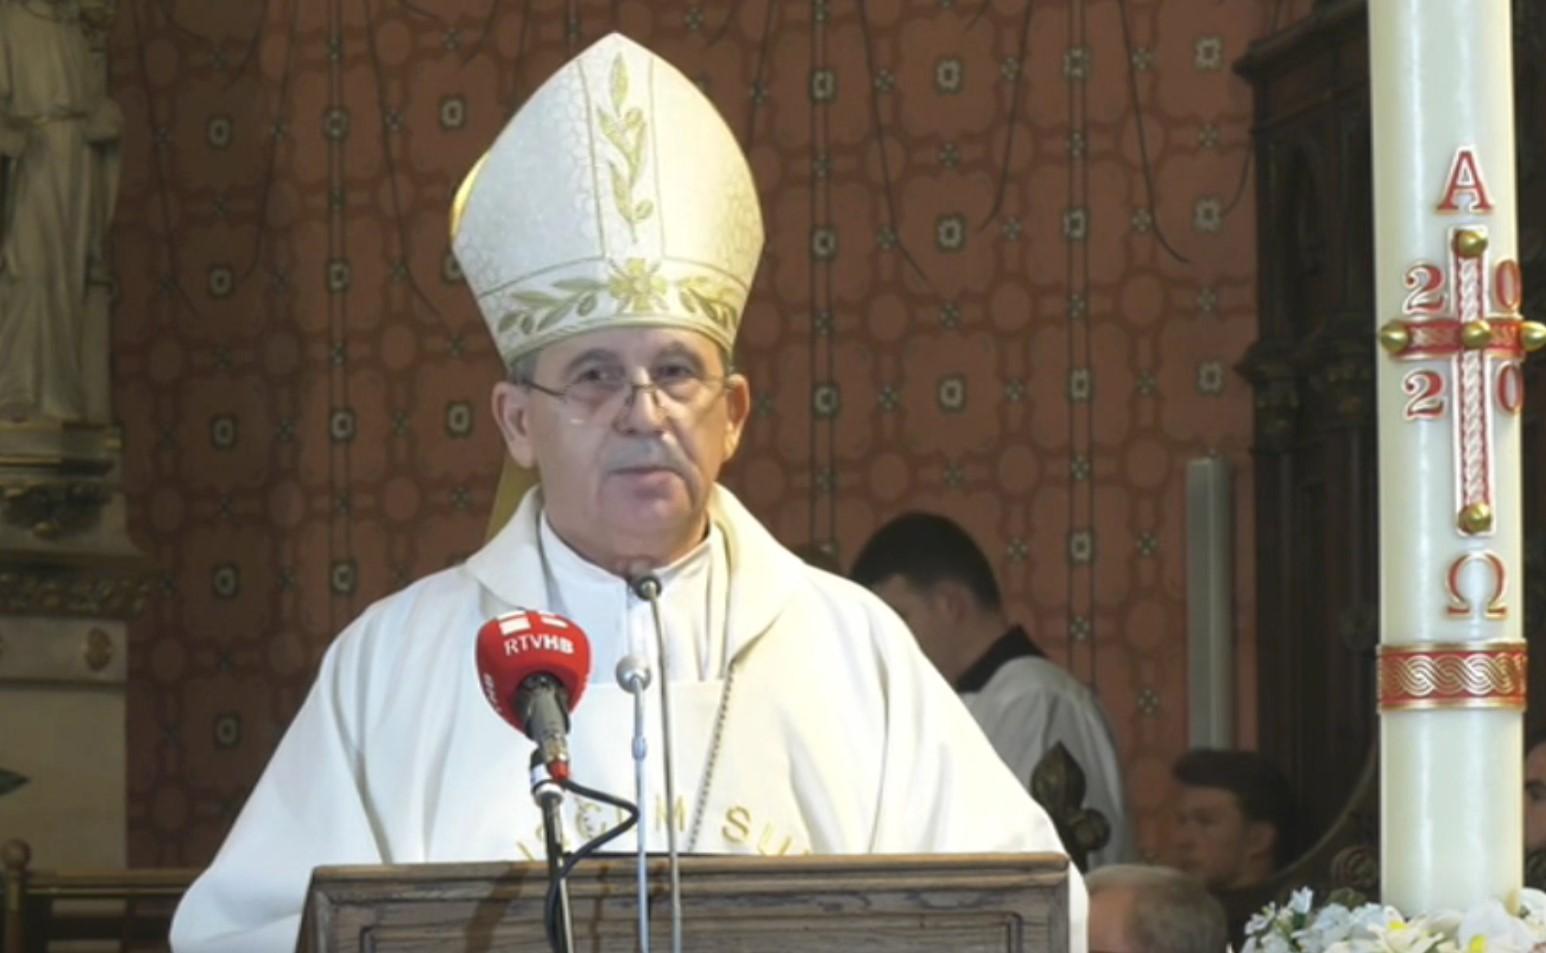 Uskršnja poruka vrhbosanskog nadbiskupa Tome Vukšića: Ako je moguće, koliko je do vas, u miru budite sa svima